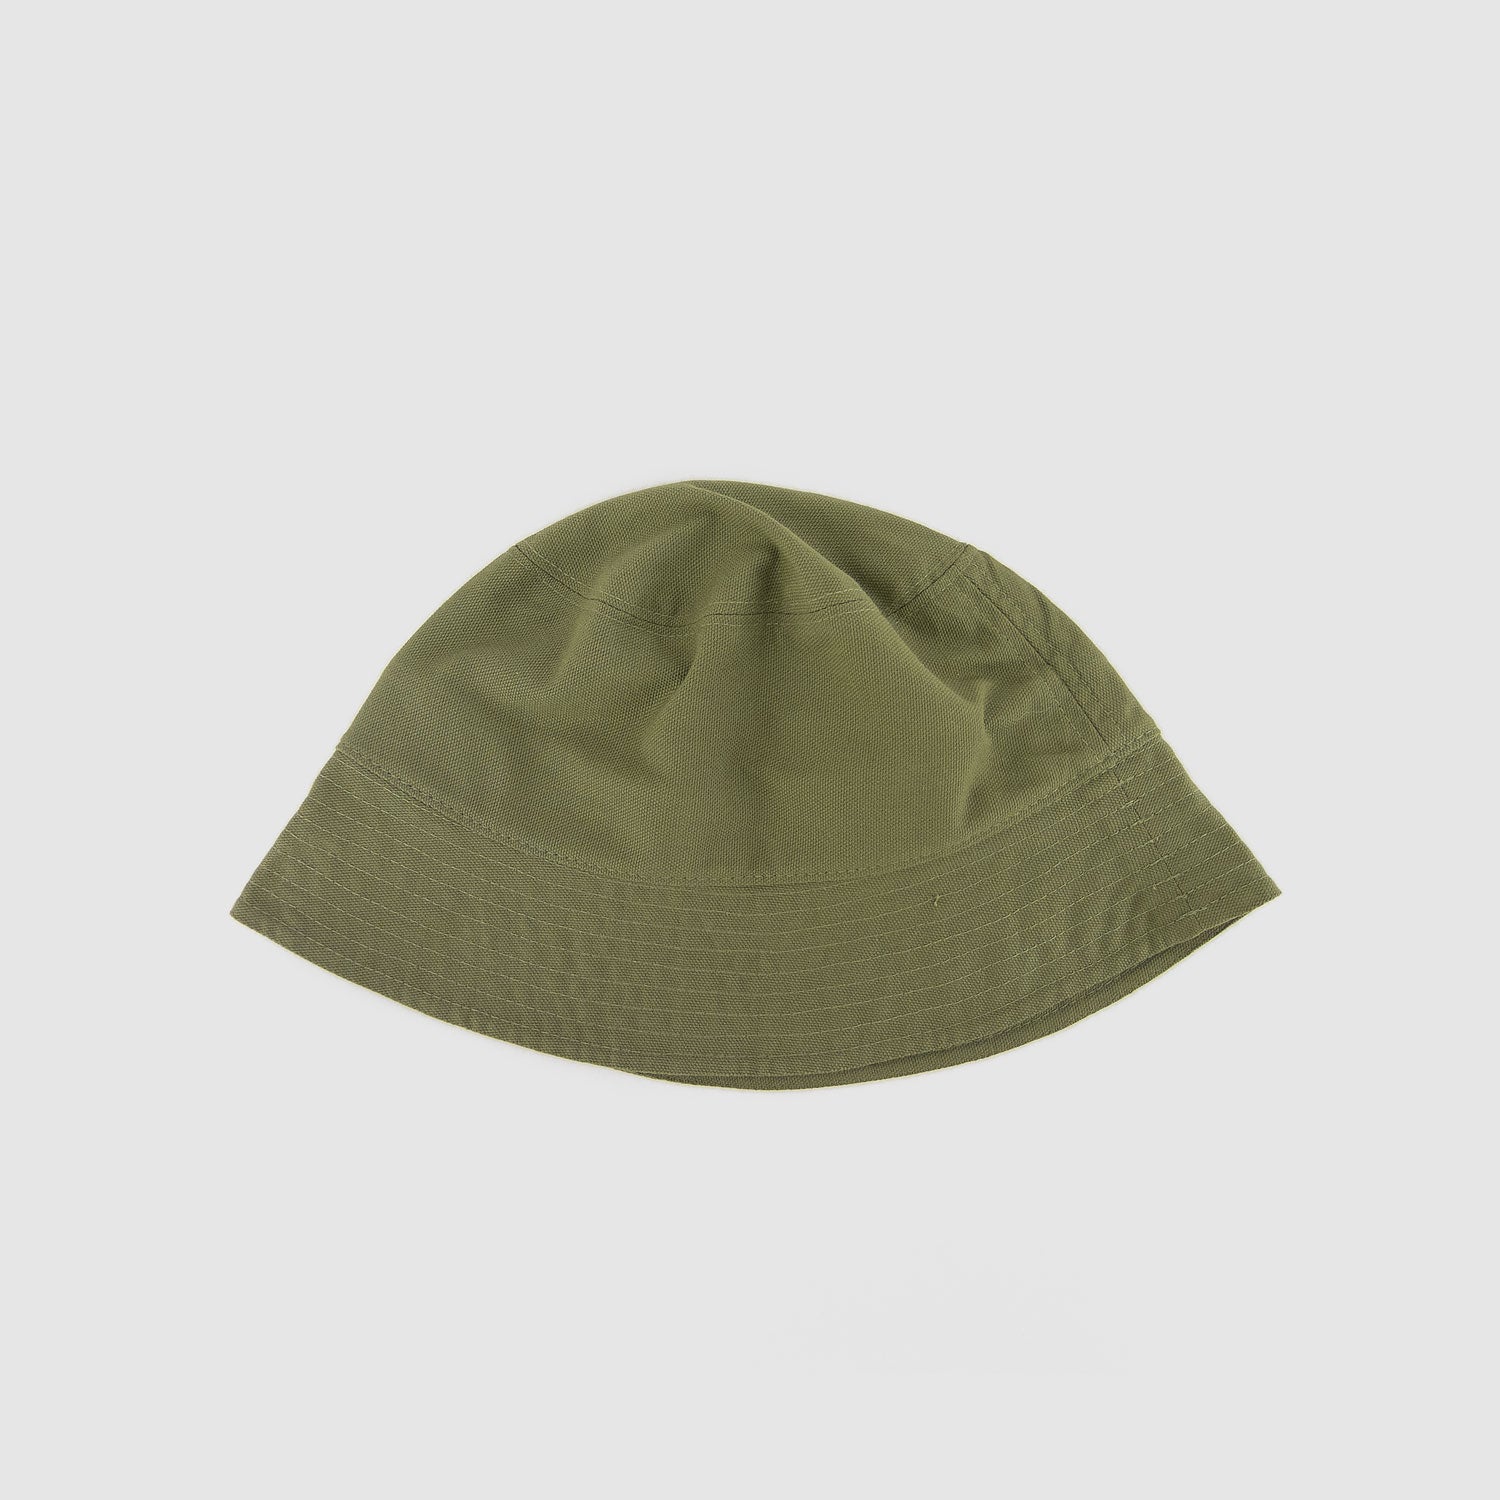 Buy Bucket Hat Green Color online